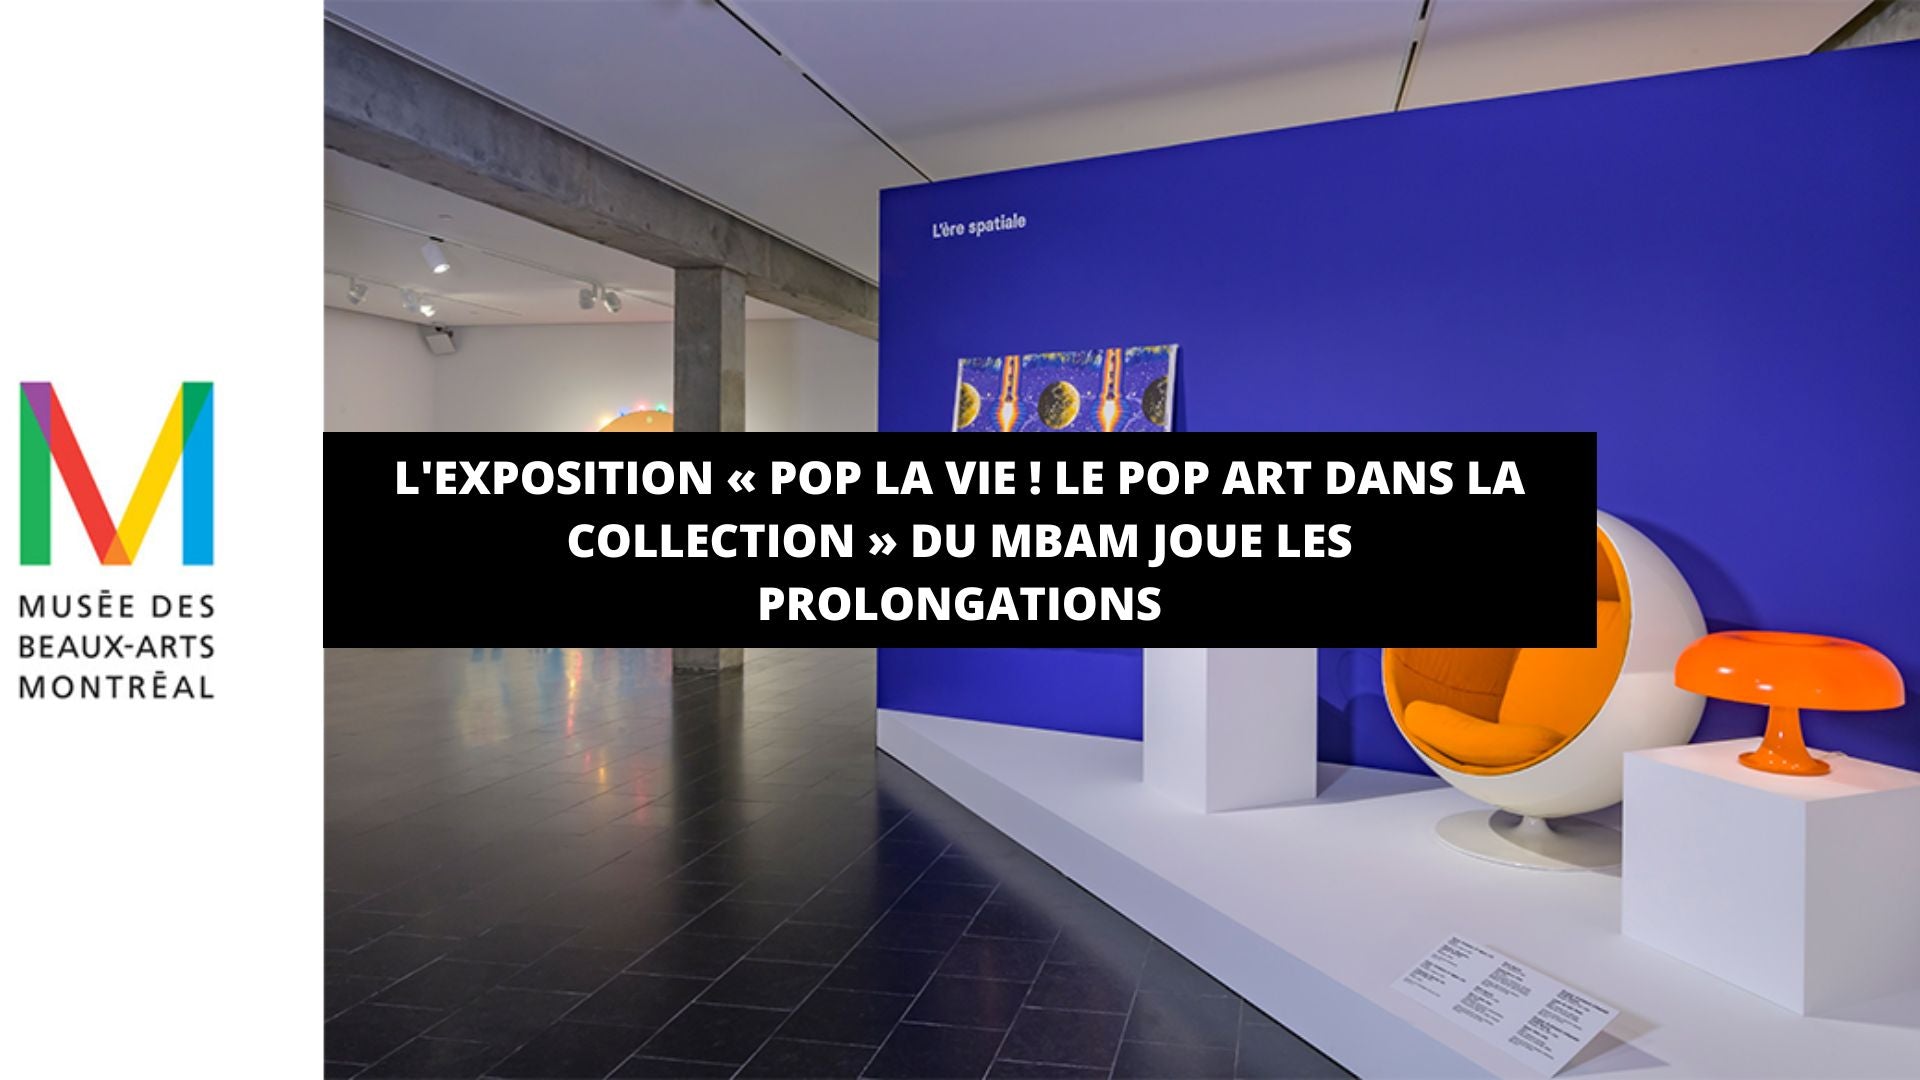 L'exposition « Pop la vie ! Le pop art dans la collection » du MBAM joue les prolongations - The Art Avenue